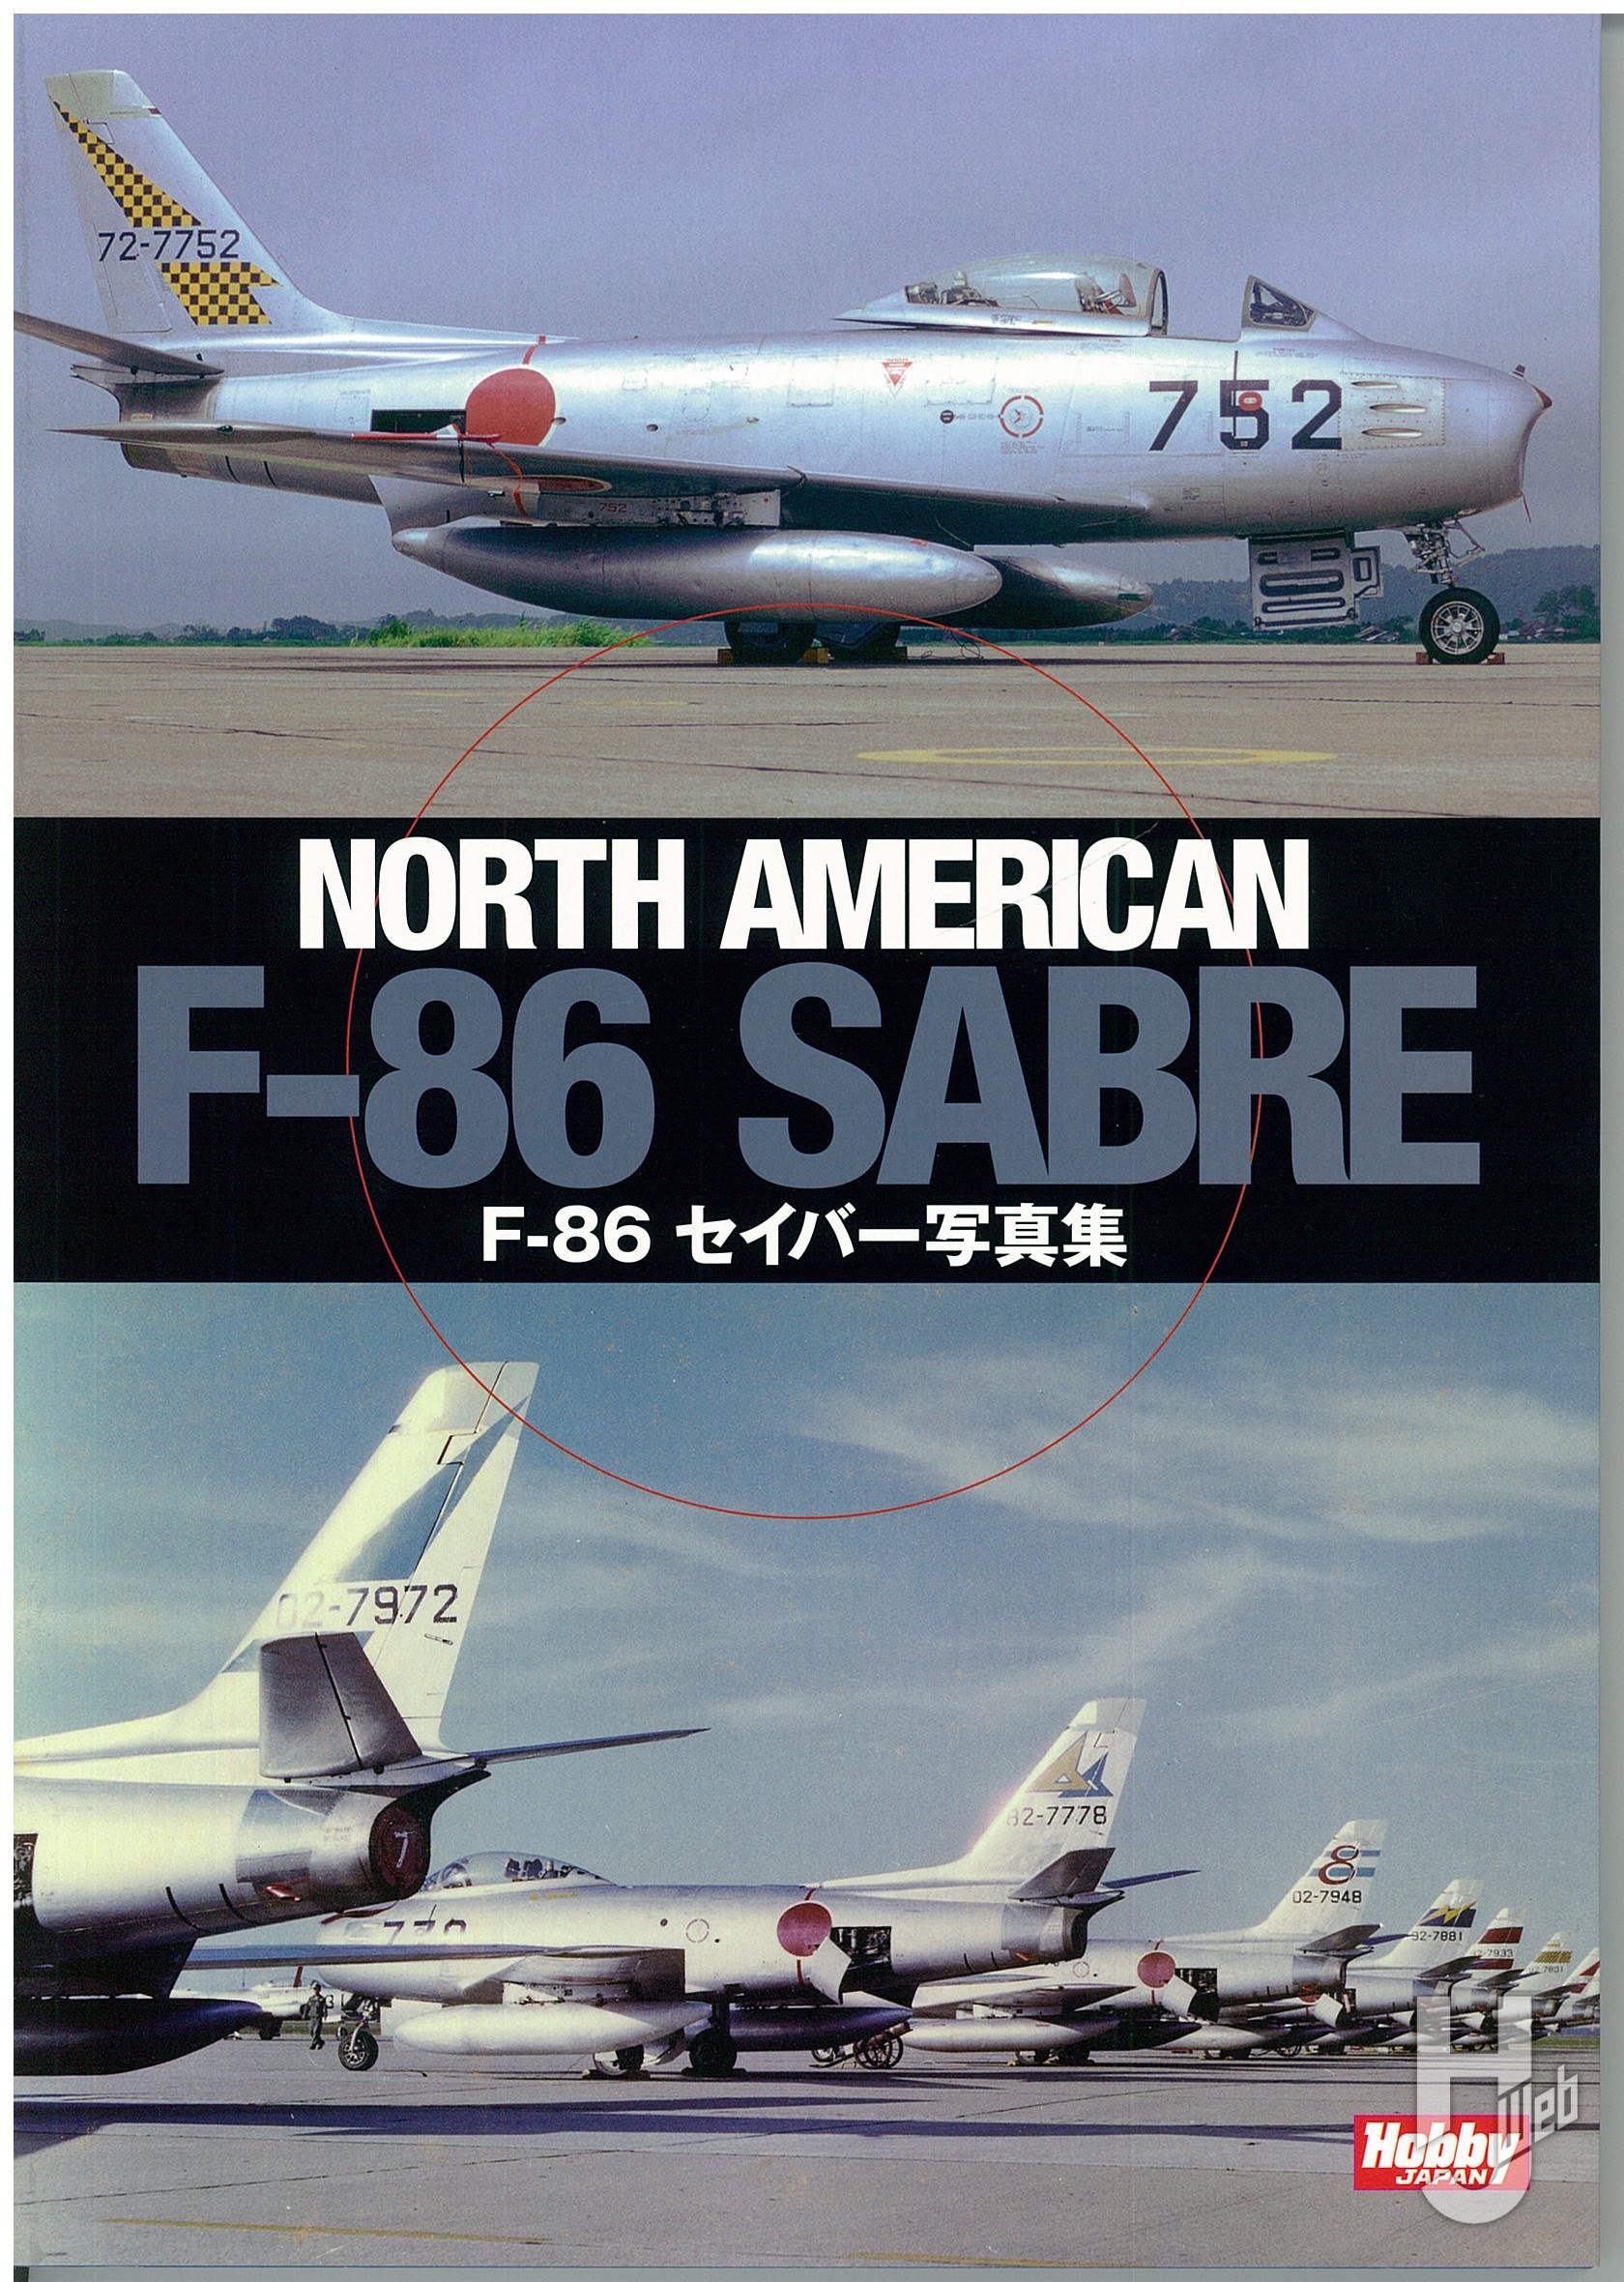 NORTH AMERICAN F-86 SABRE F-86セイバー写真集の表紙画像